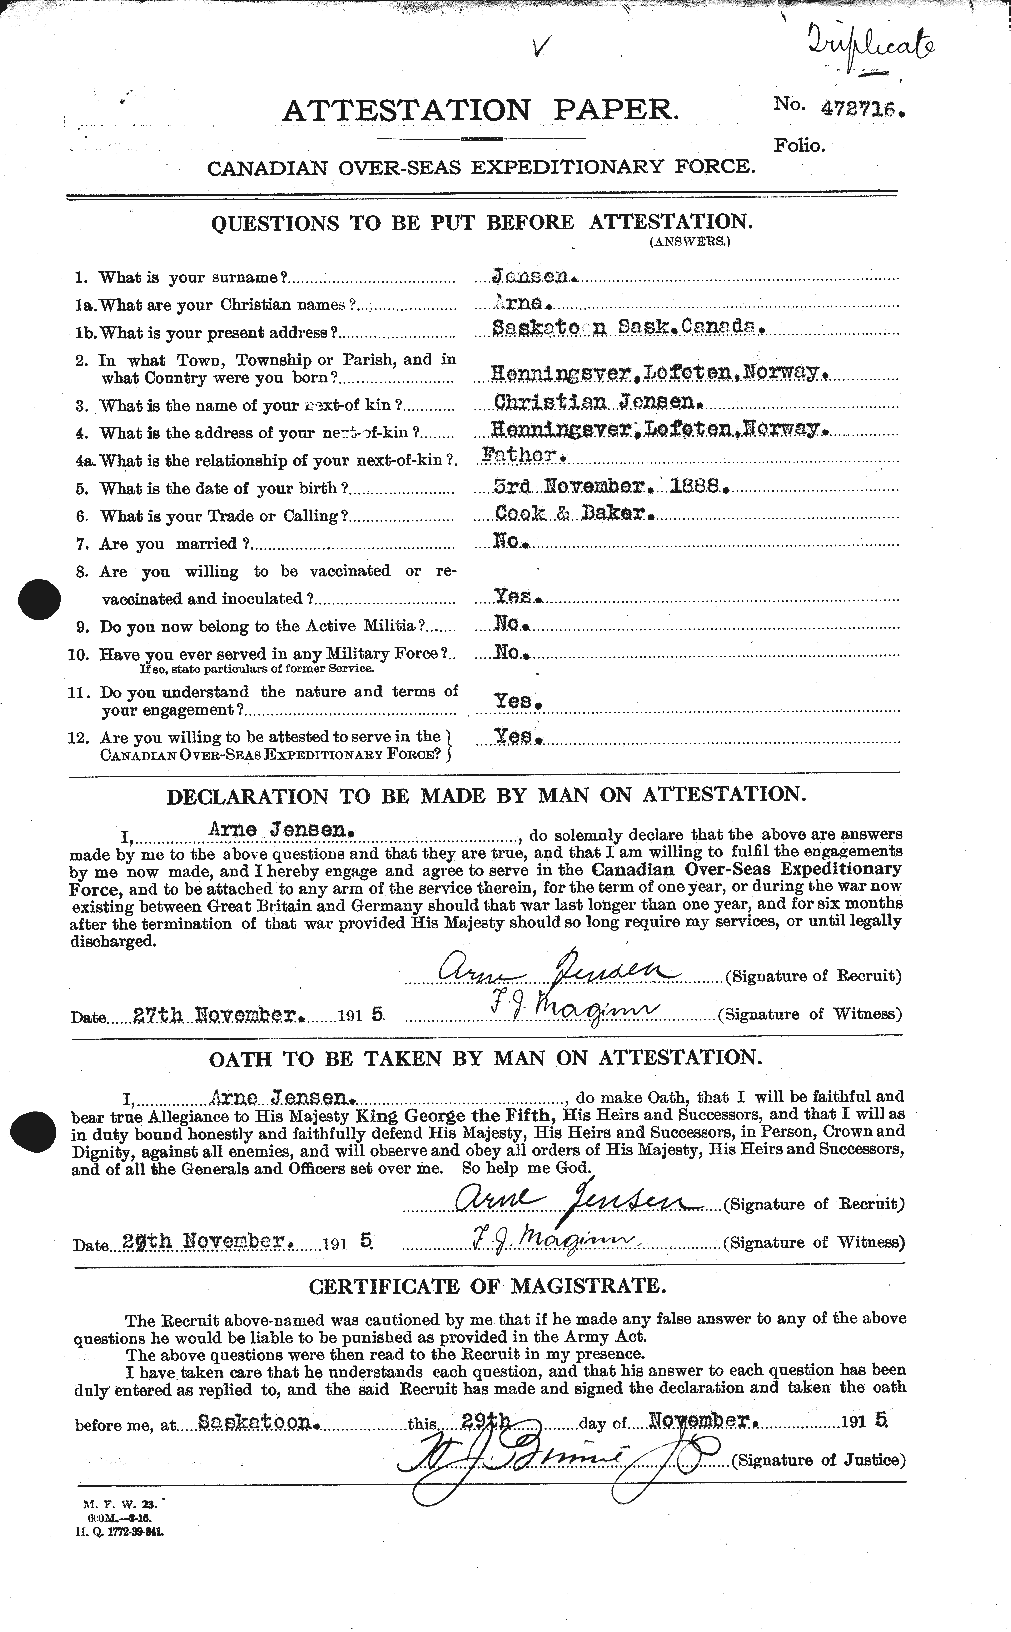 Dossiers du Personnel de la Première Guerre mondiale - CEC 421541a